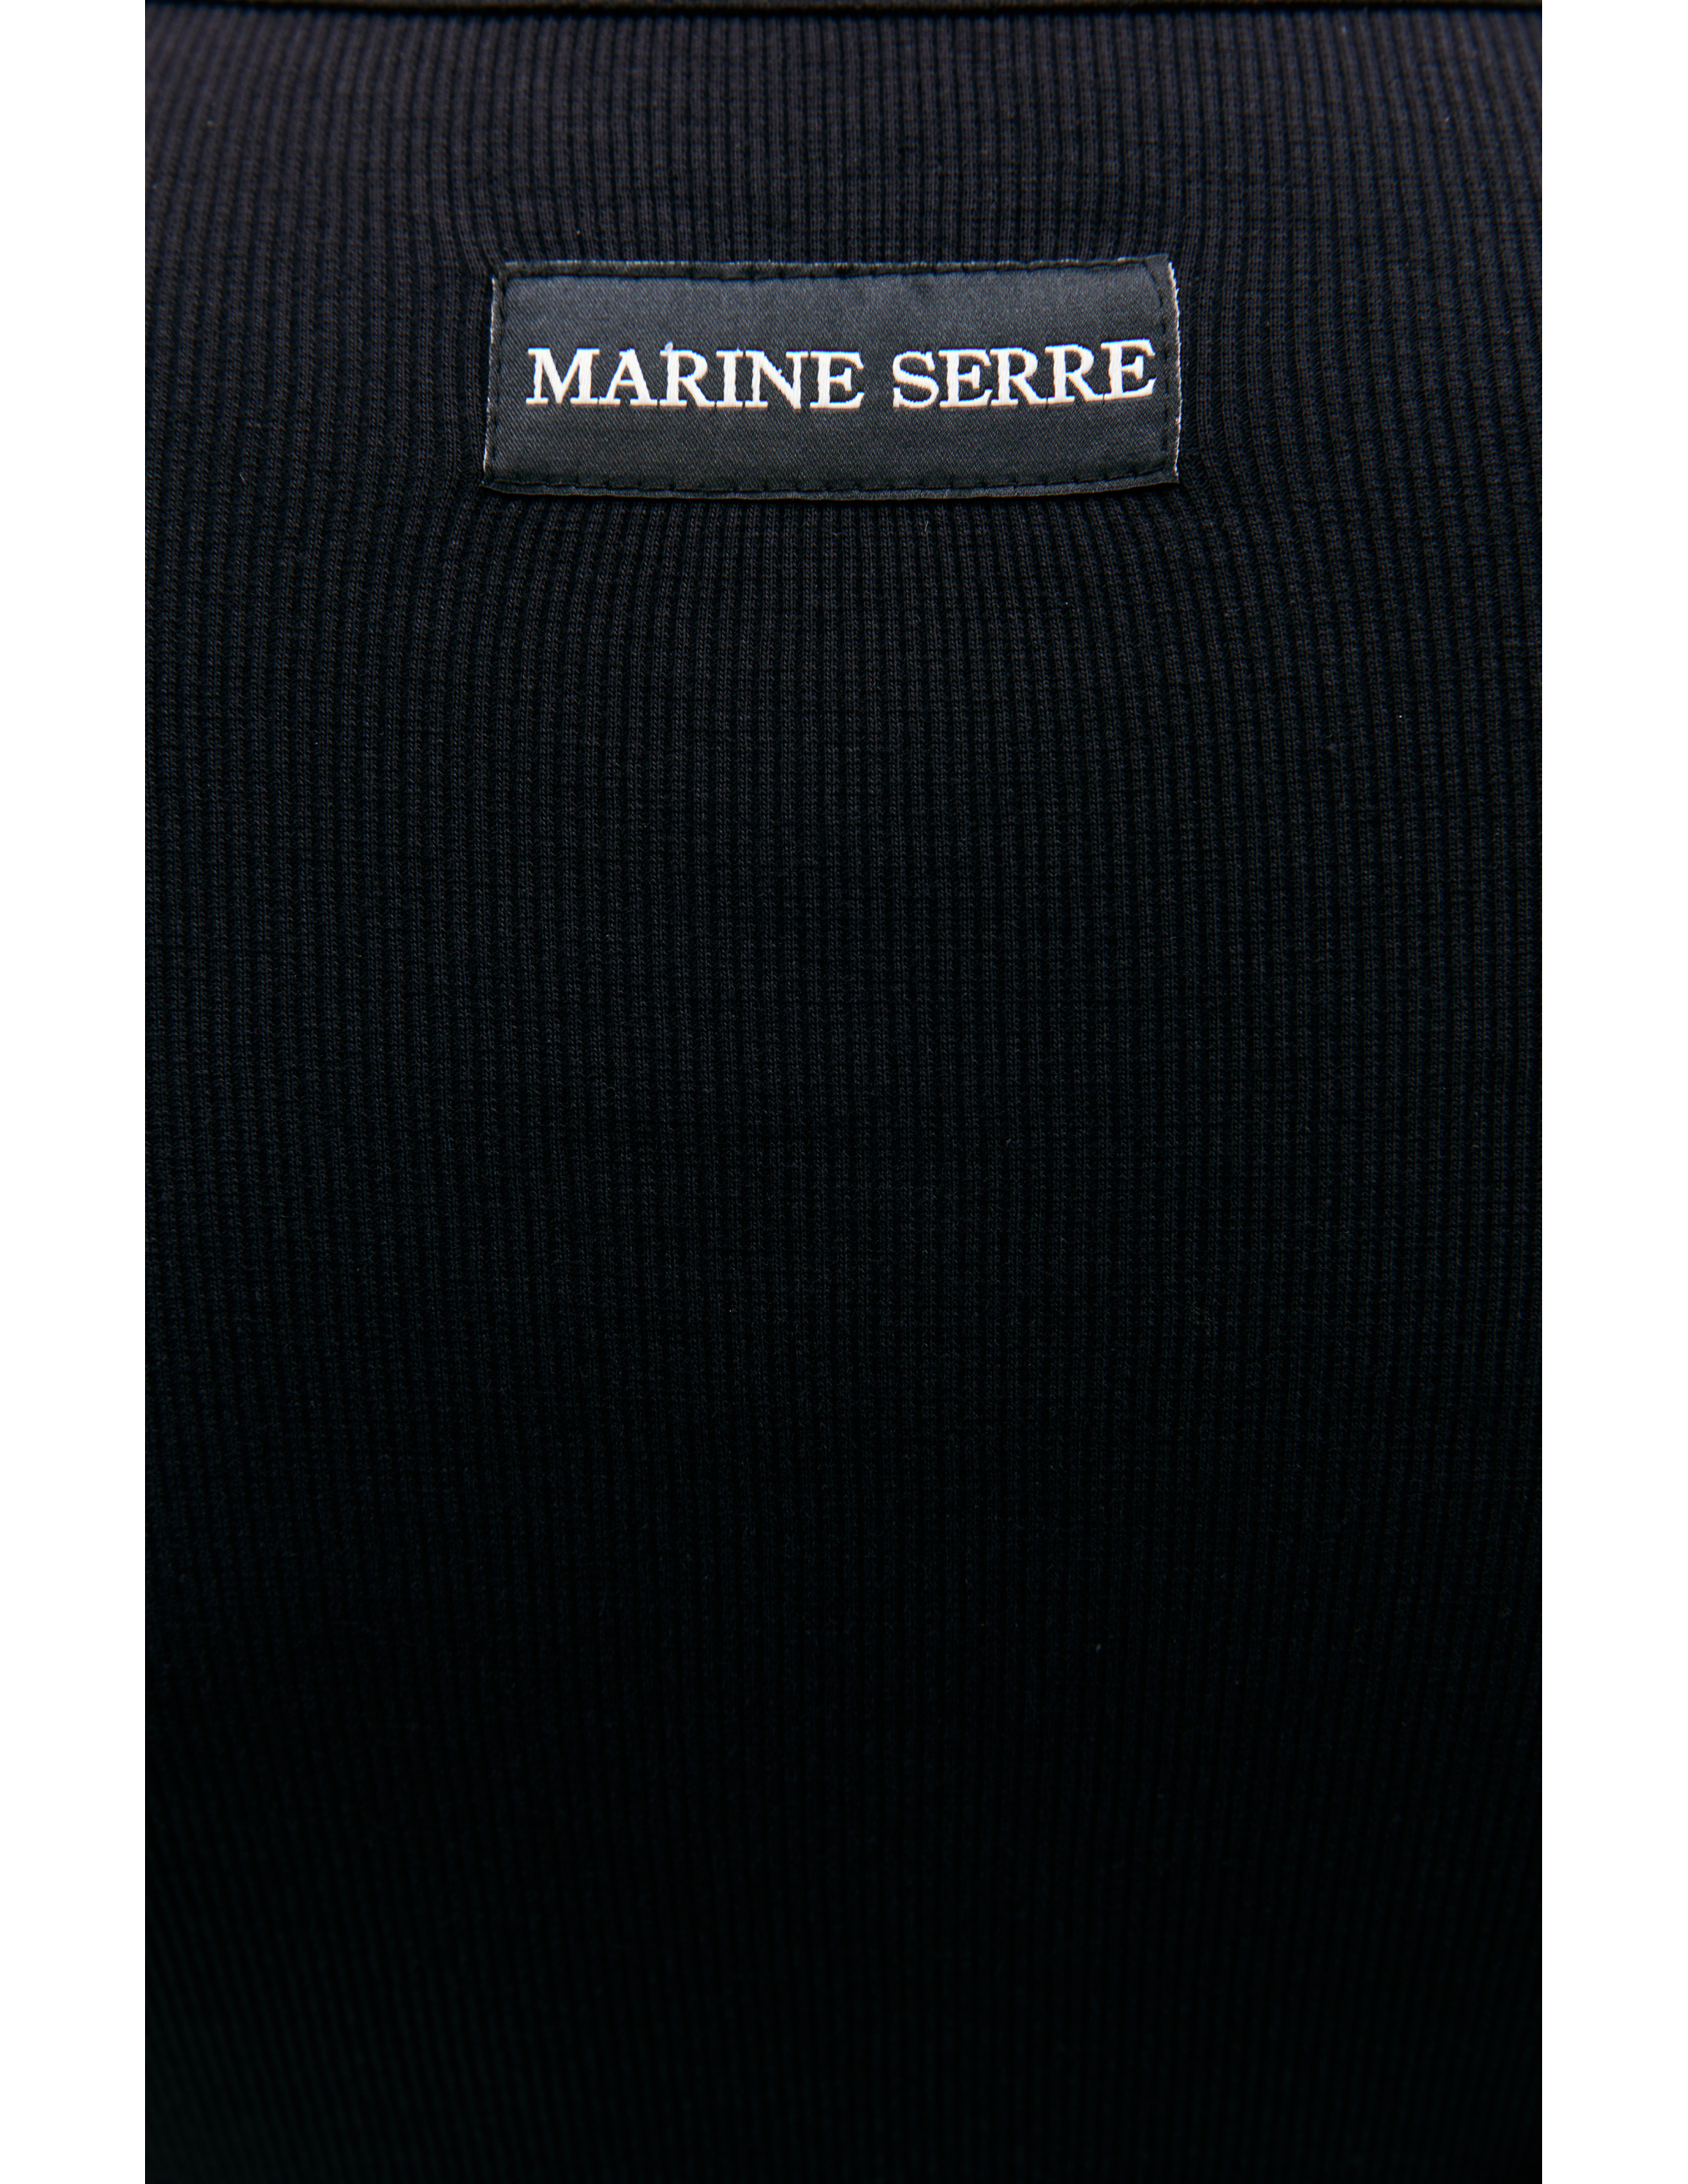 Черный боди с вышивкой логотипа MARINE SERRE WTO062/CJER0011/BK99, размер S;M;L;XL WTO062/CJER0011/BK99 - фото 6